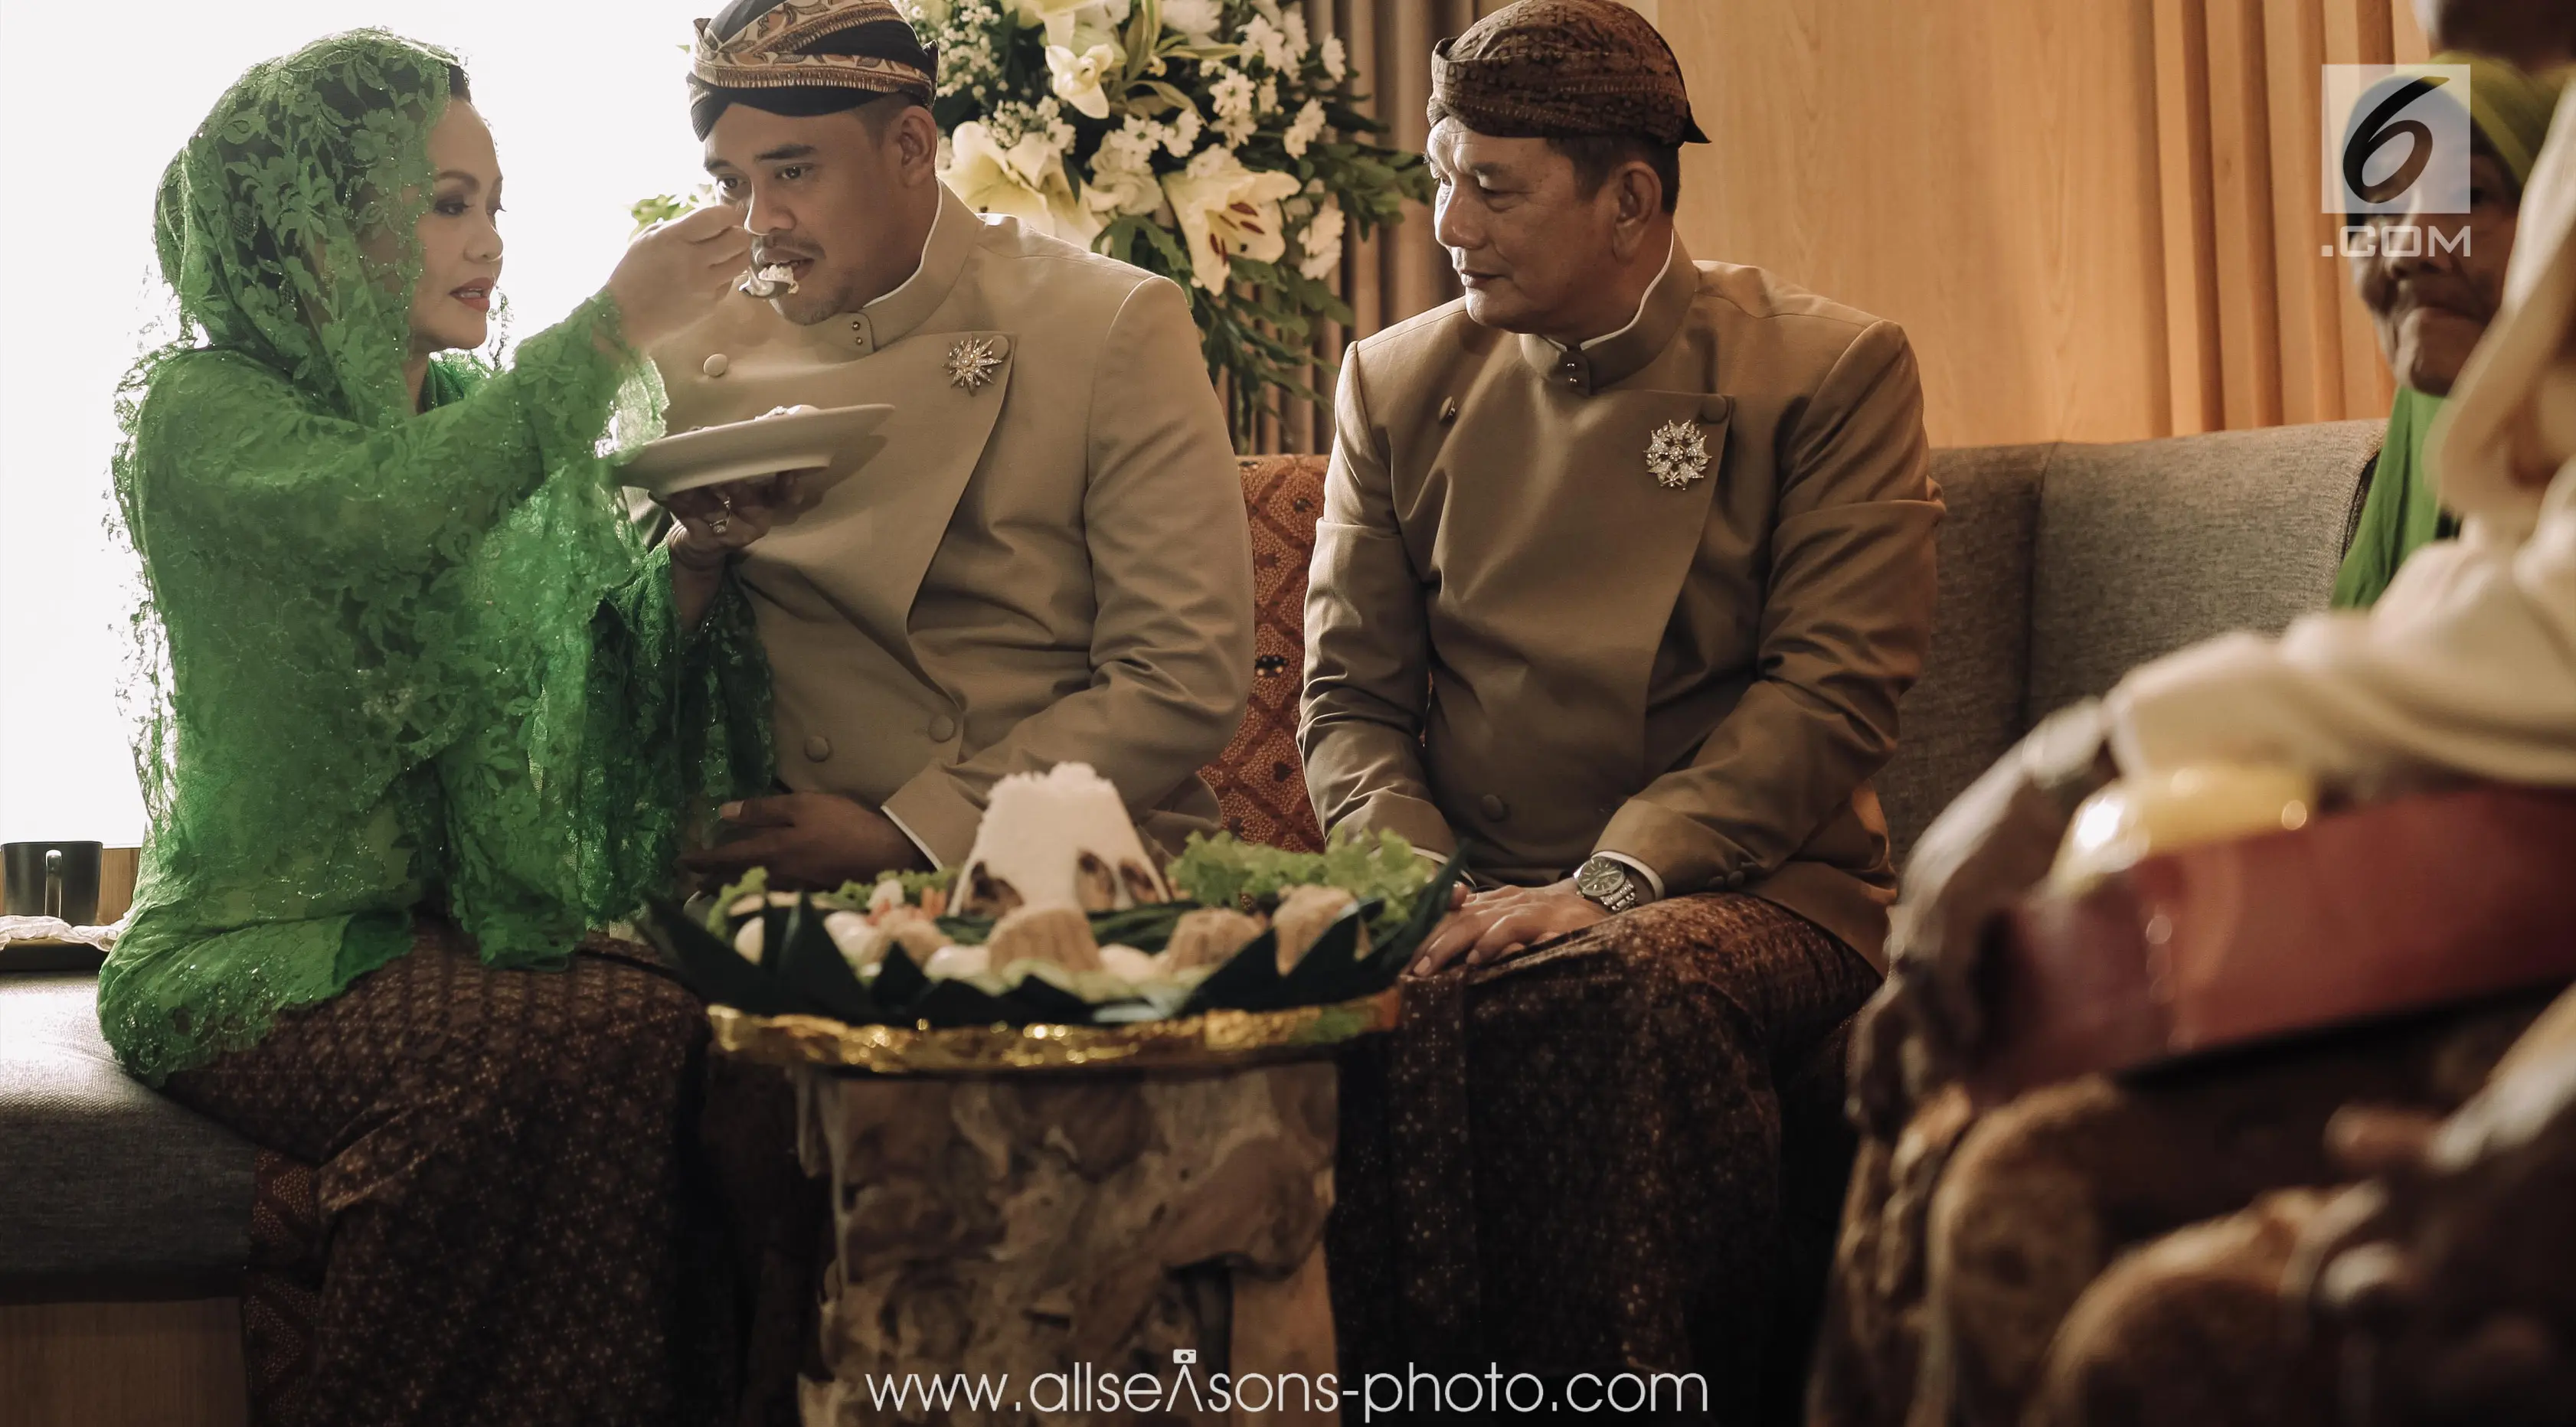 Ibu dari calon pengantin laki-laki, Bobby Nasution menyuapi usai prosesi siraman di Hotel Alila, Solo, Selasa (7/11). Prosesi siraman ini digelar secara adat Jawa. (Liputan6.com/Pool/All Seasons Photo)